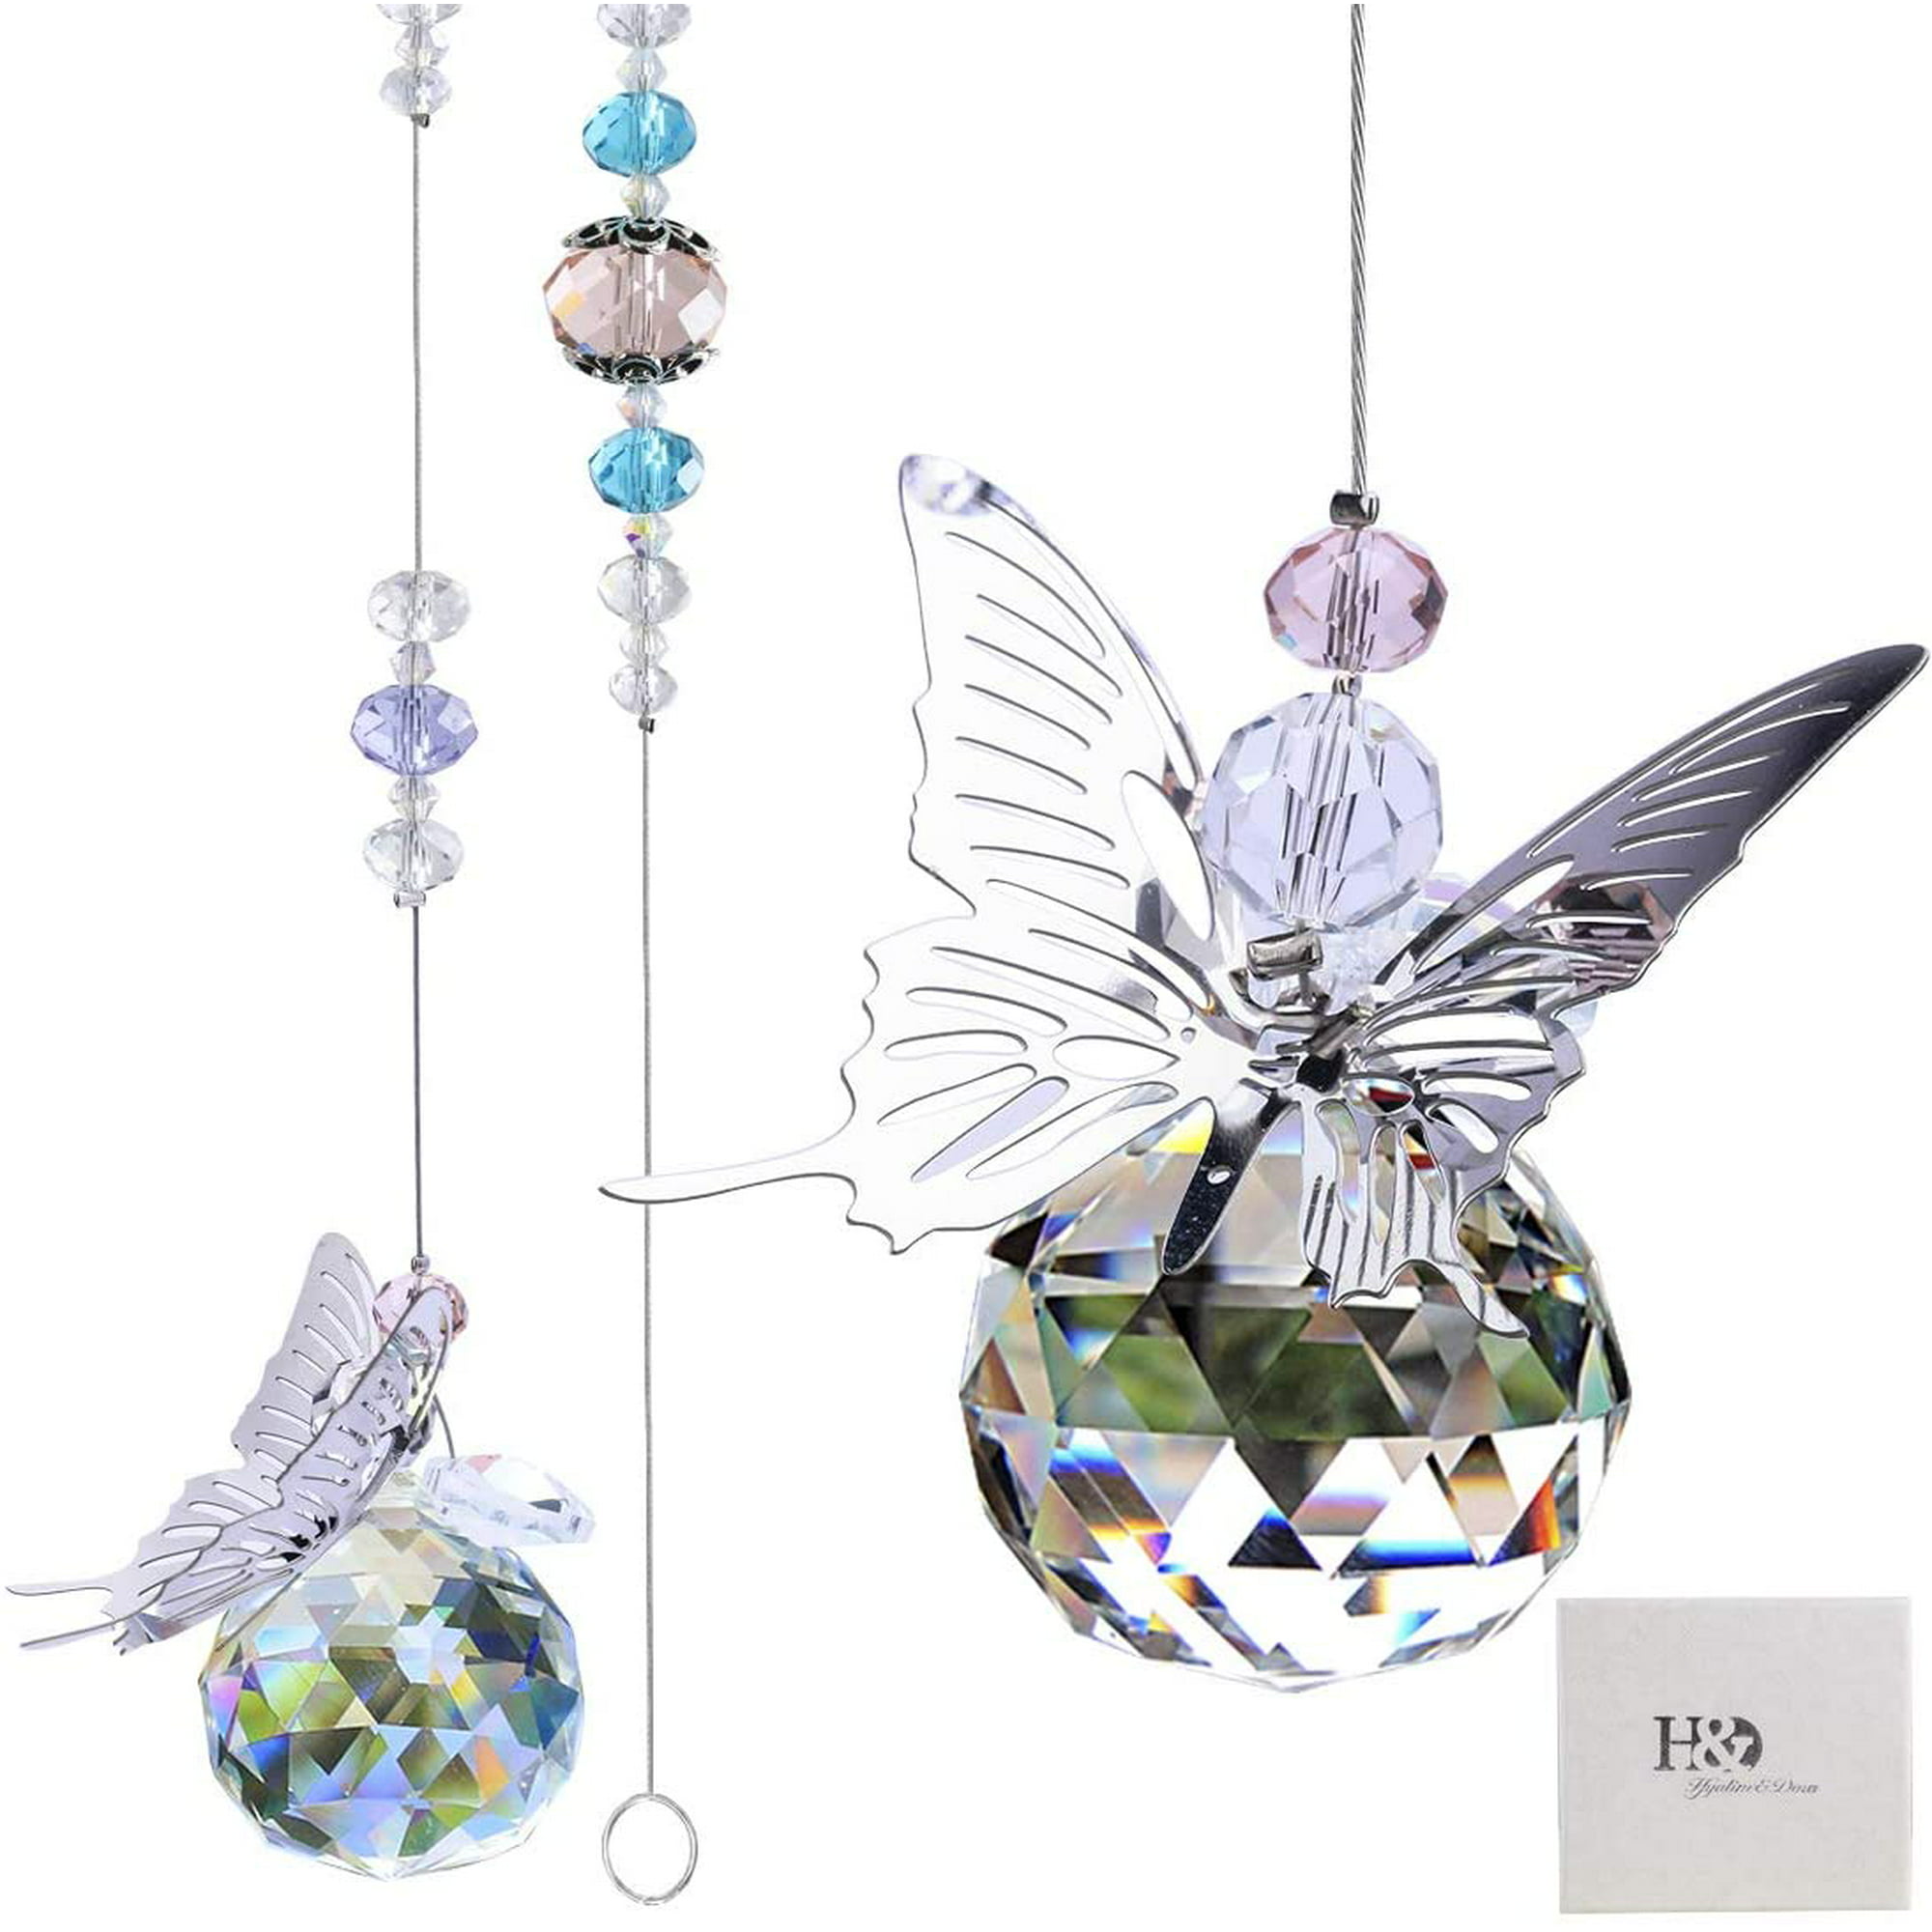 Attrape-soleil papillon en métal, boule de cristal suspendue